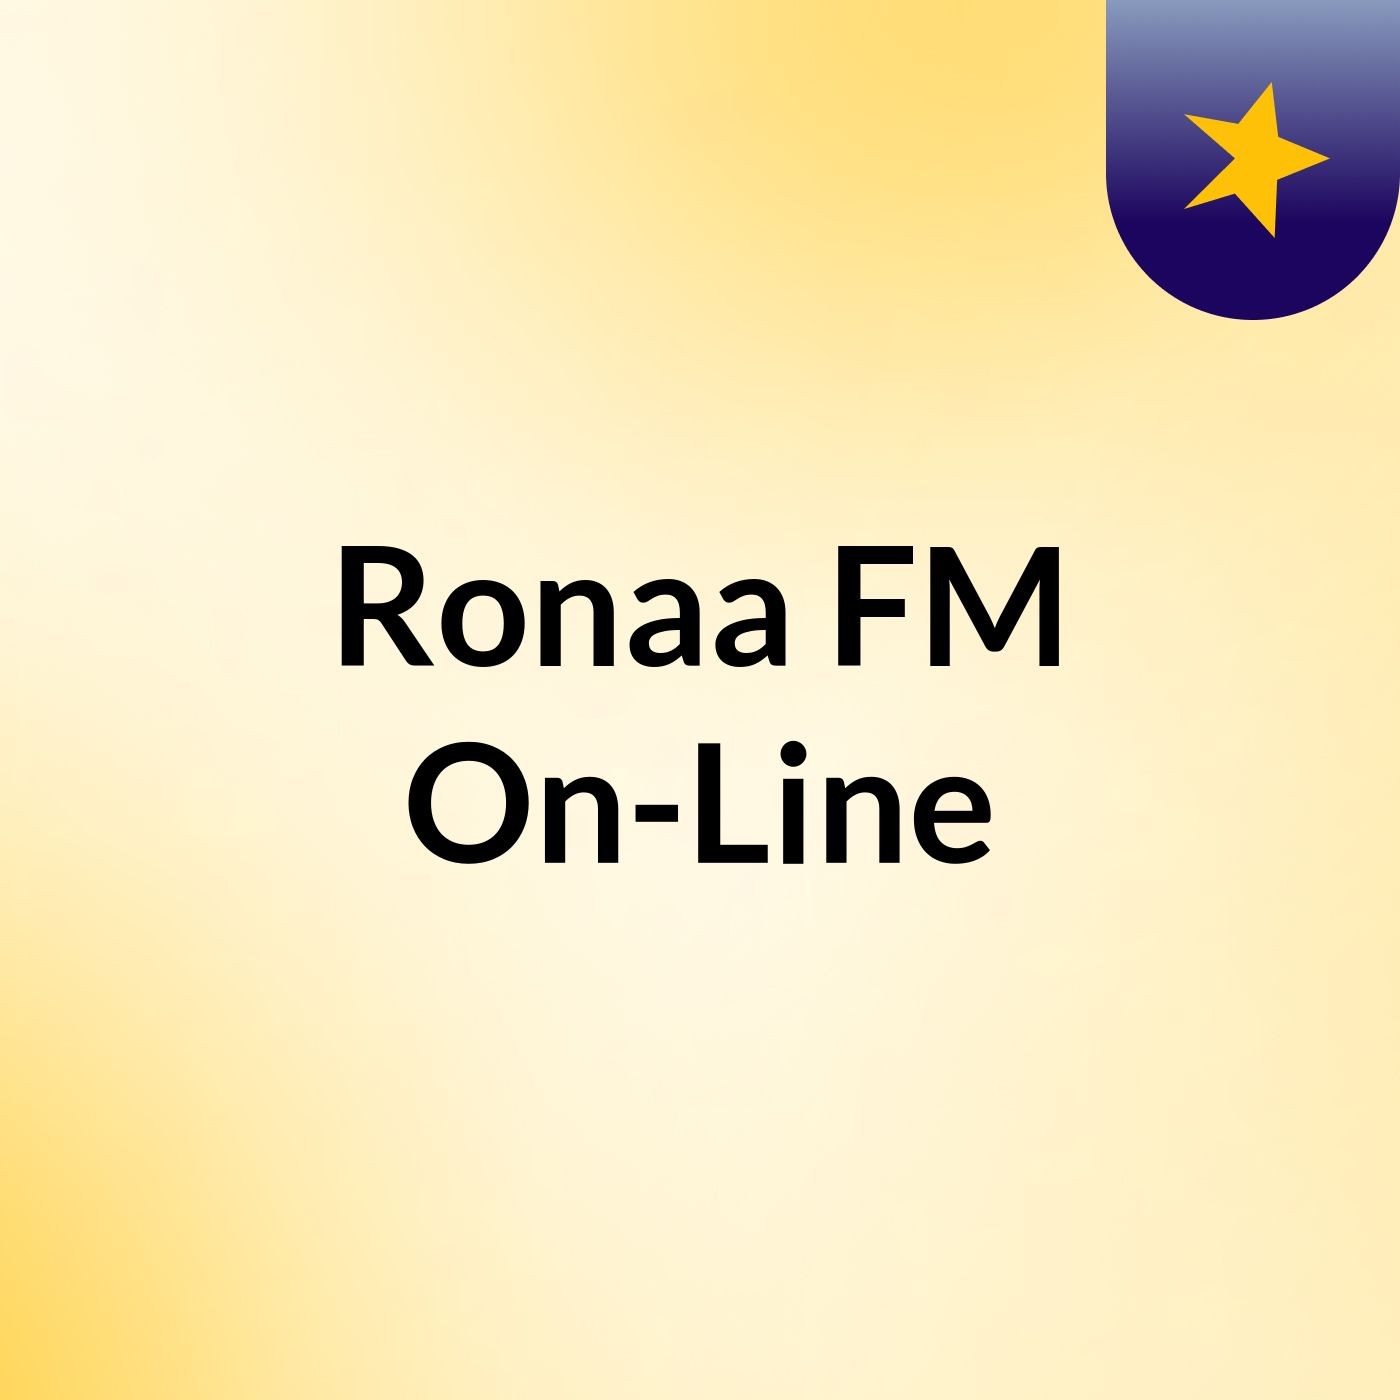 Ronaa FM On-Line